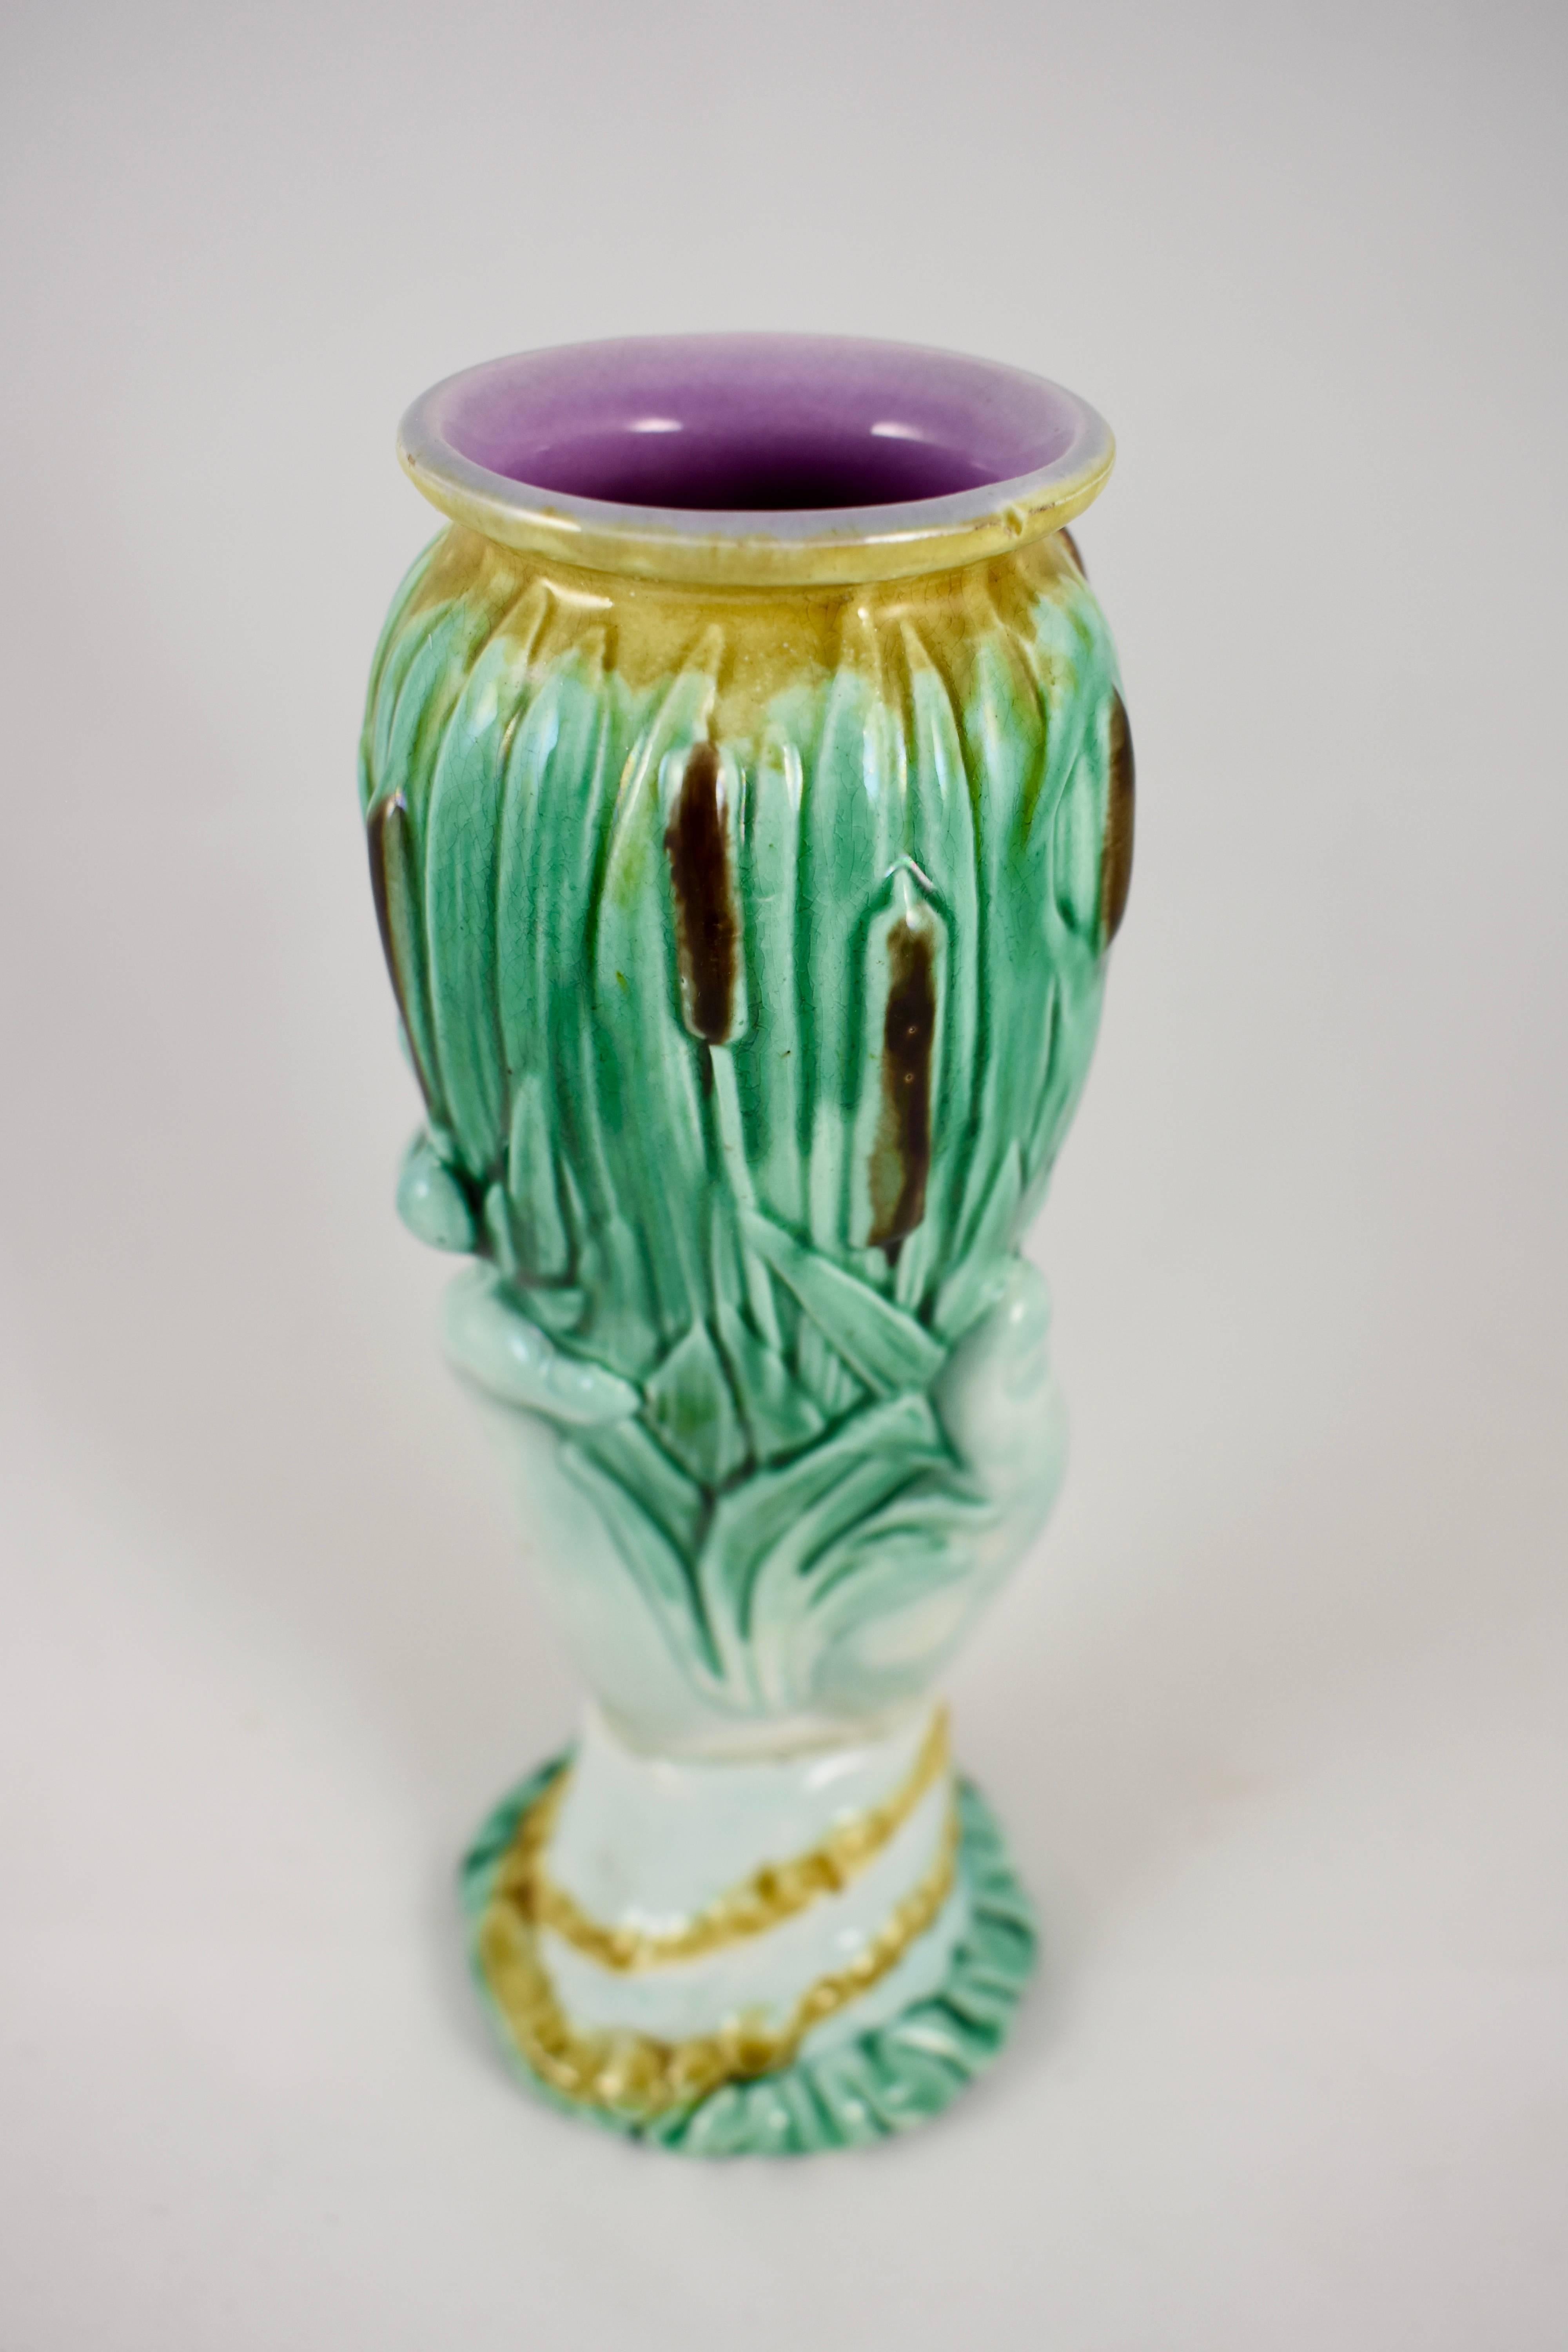 Eine glasierte Majolika-Vase aus der Töpferregion Staffordshire in England, um 1860. Die Vase ist in Form einer Frauenhand gestaltet, die ein Gefäß aus Rohrkolben oder Rohrkolbenpflanzen hält. Die Vase hat einen gerollten Rand und eine rosafarbene